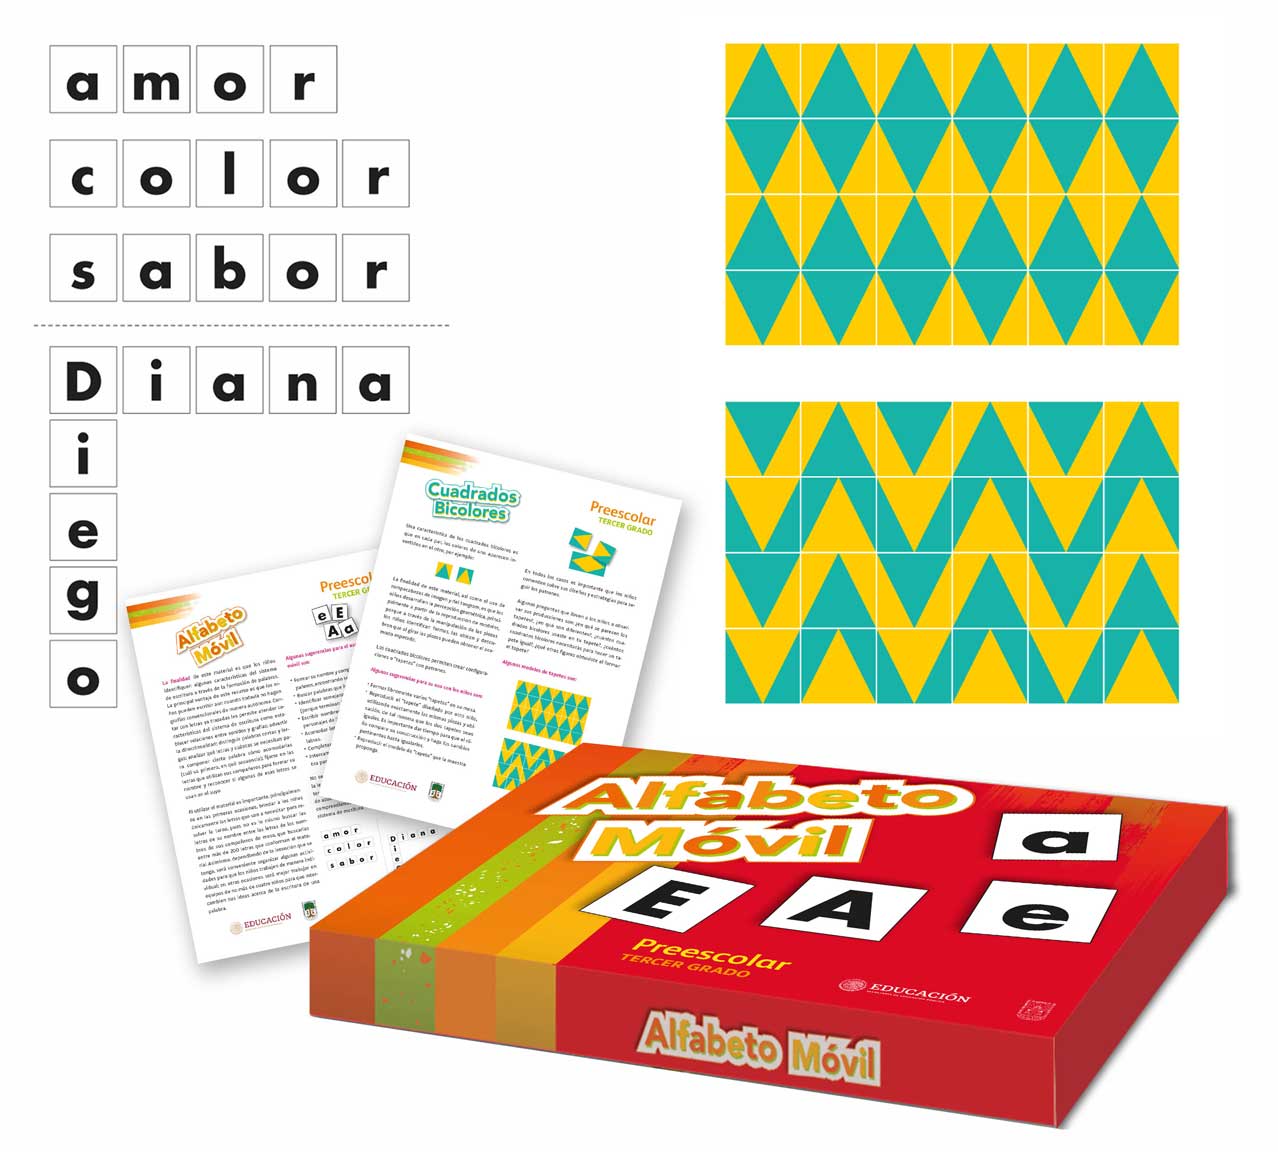 Alfabeto móvil/cuadrados bicolores Libro de Preescolar Grado 3° 